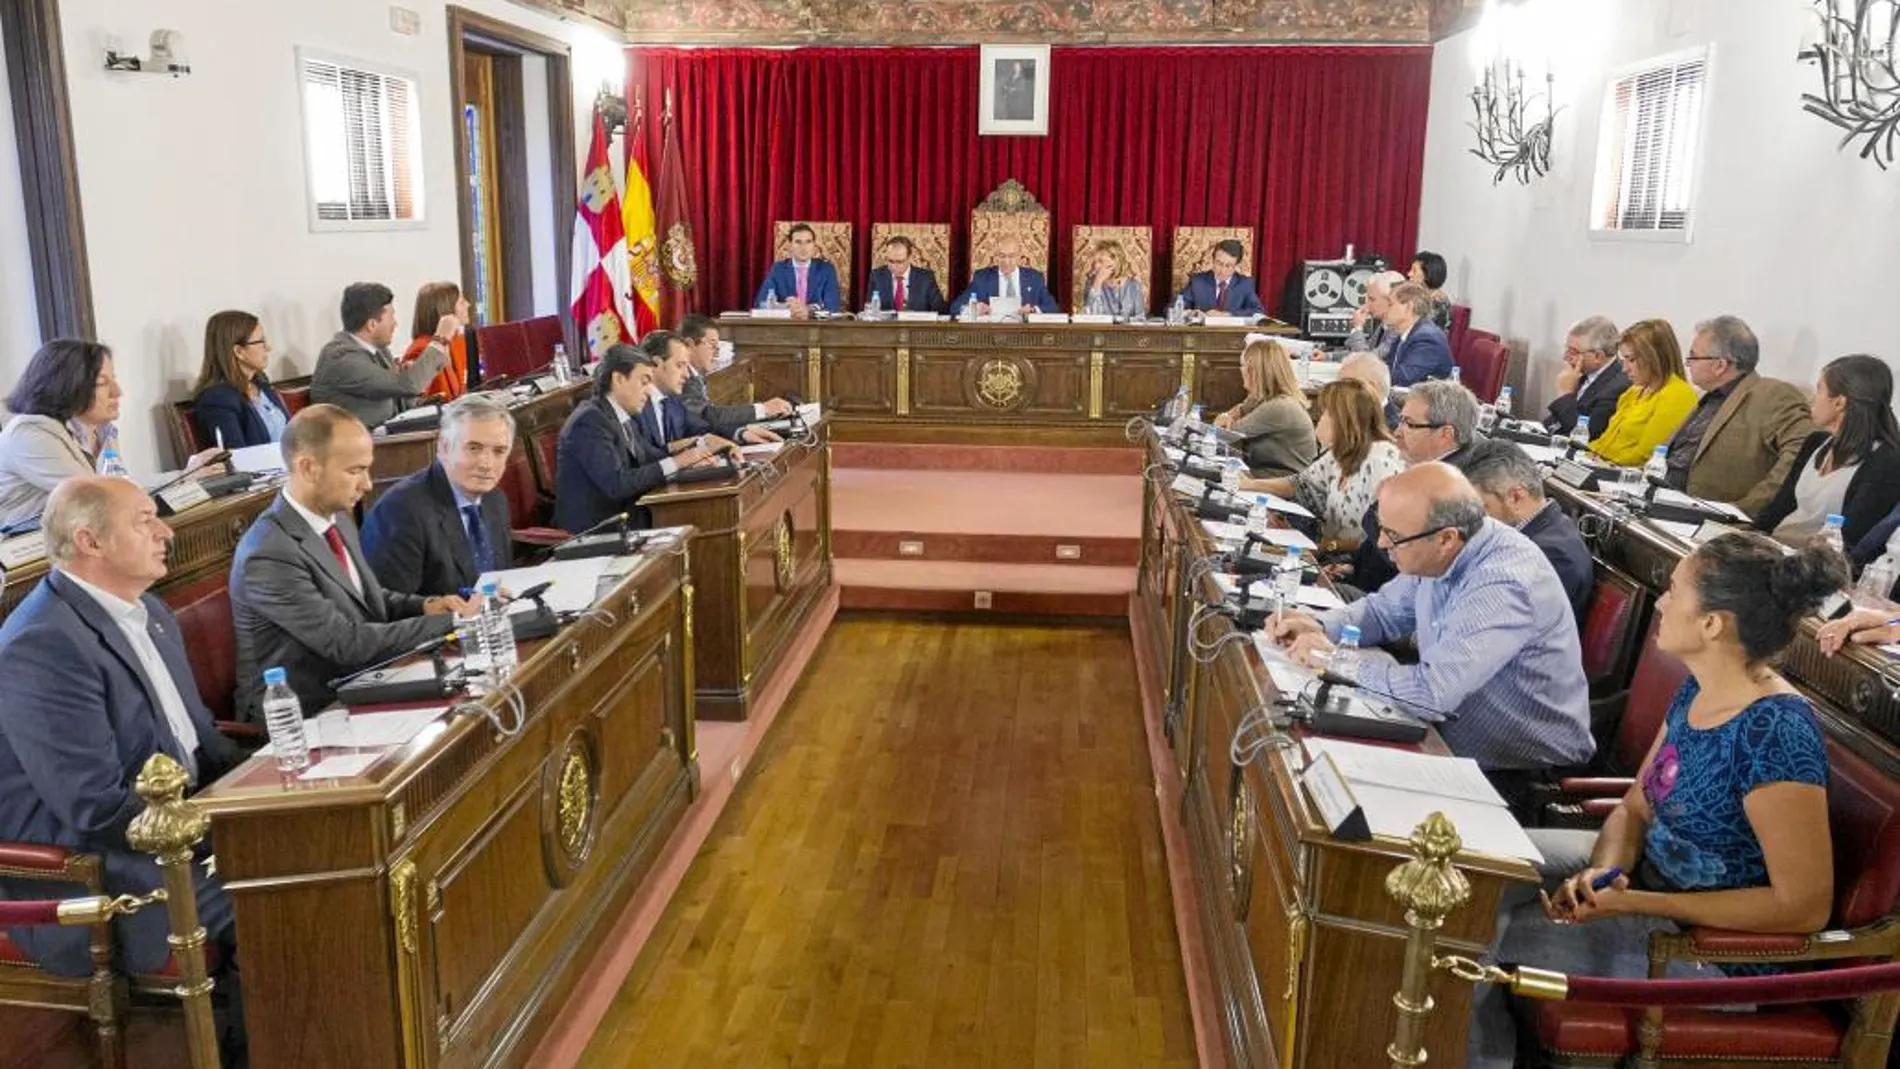 Jesús Julio Carnero preside el Pleno de la Diputación de Valladolid donde se aprobó esta proposición